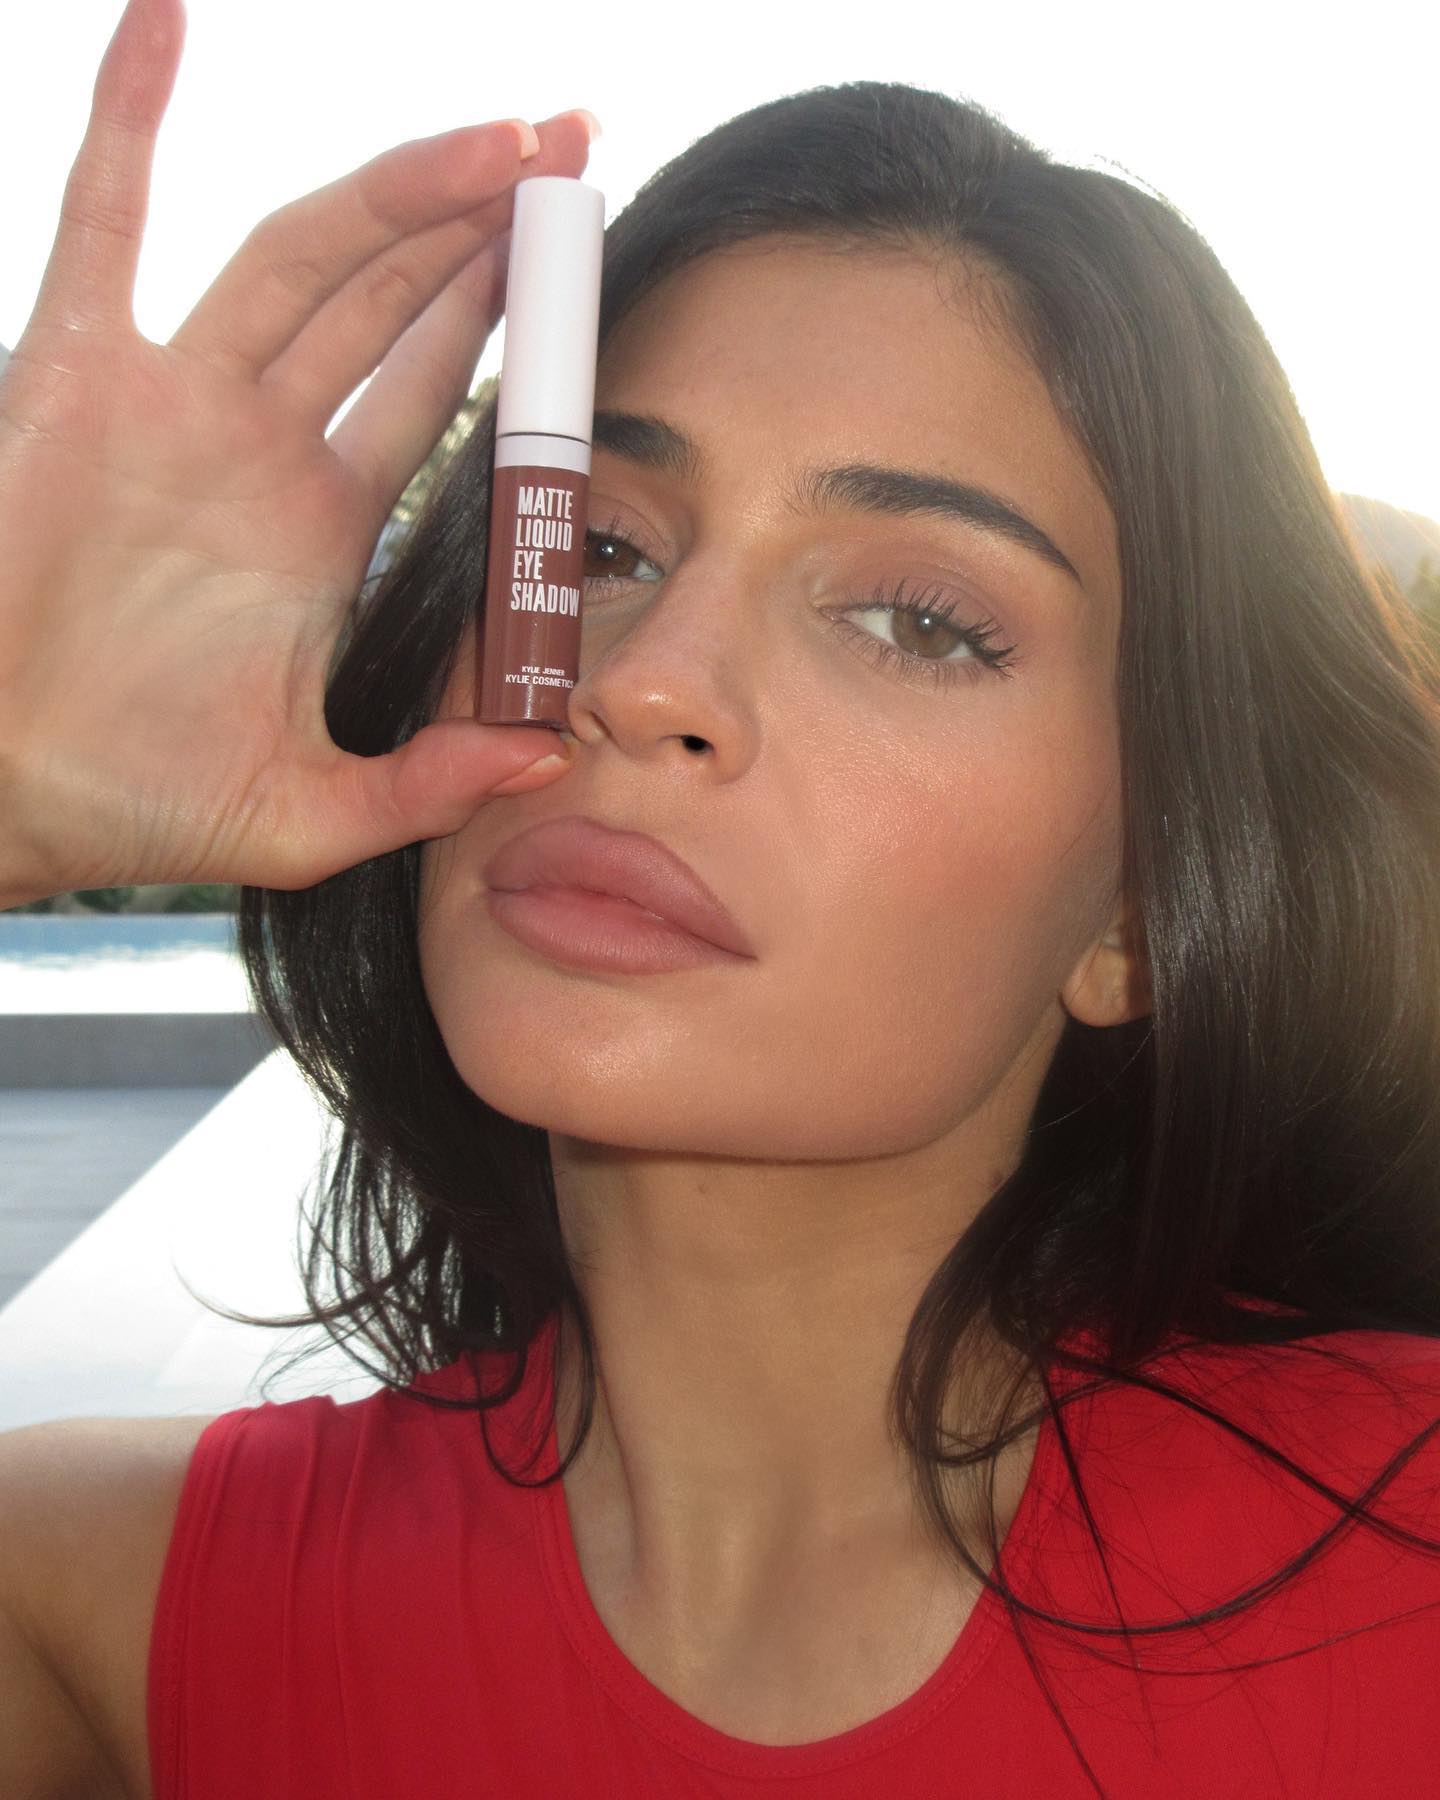 FOTOS Los selfies al rojo vivo de Kylie Jenner! - Photo 3